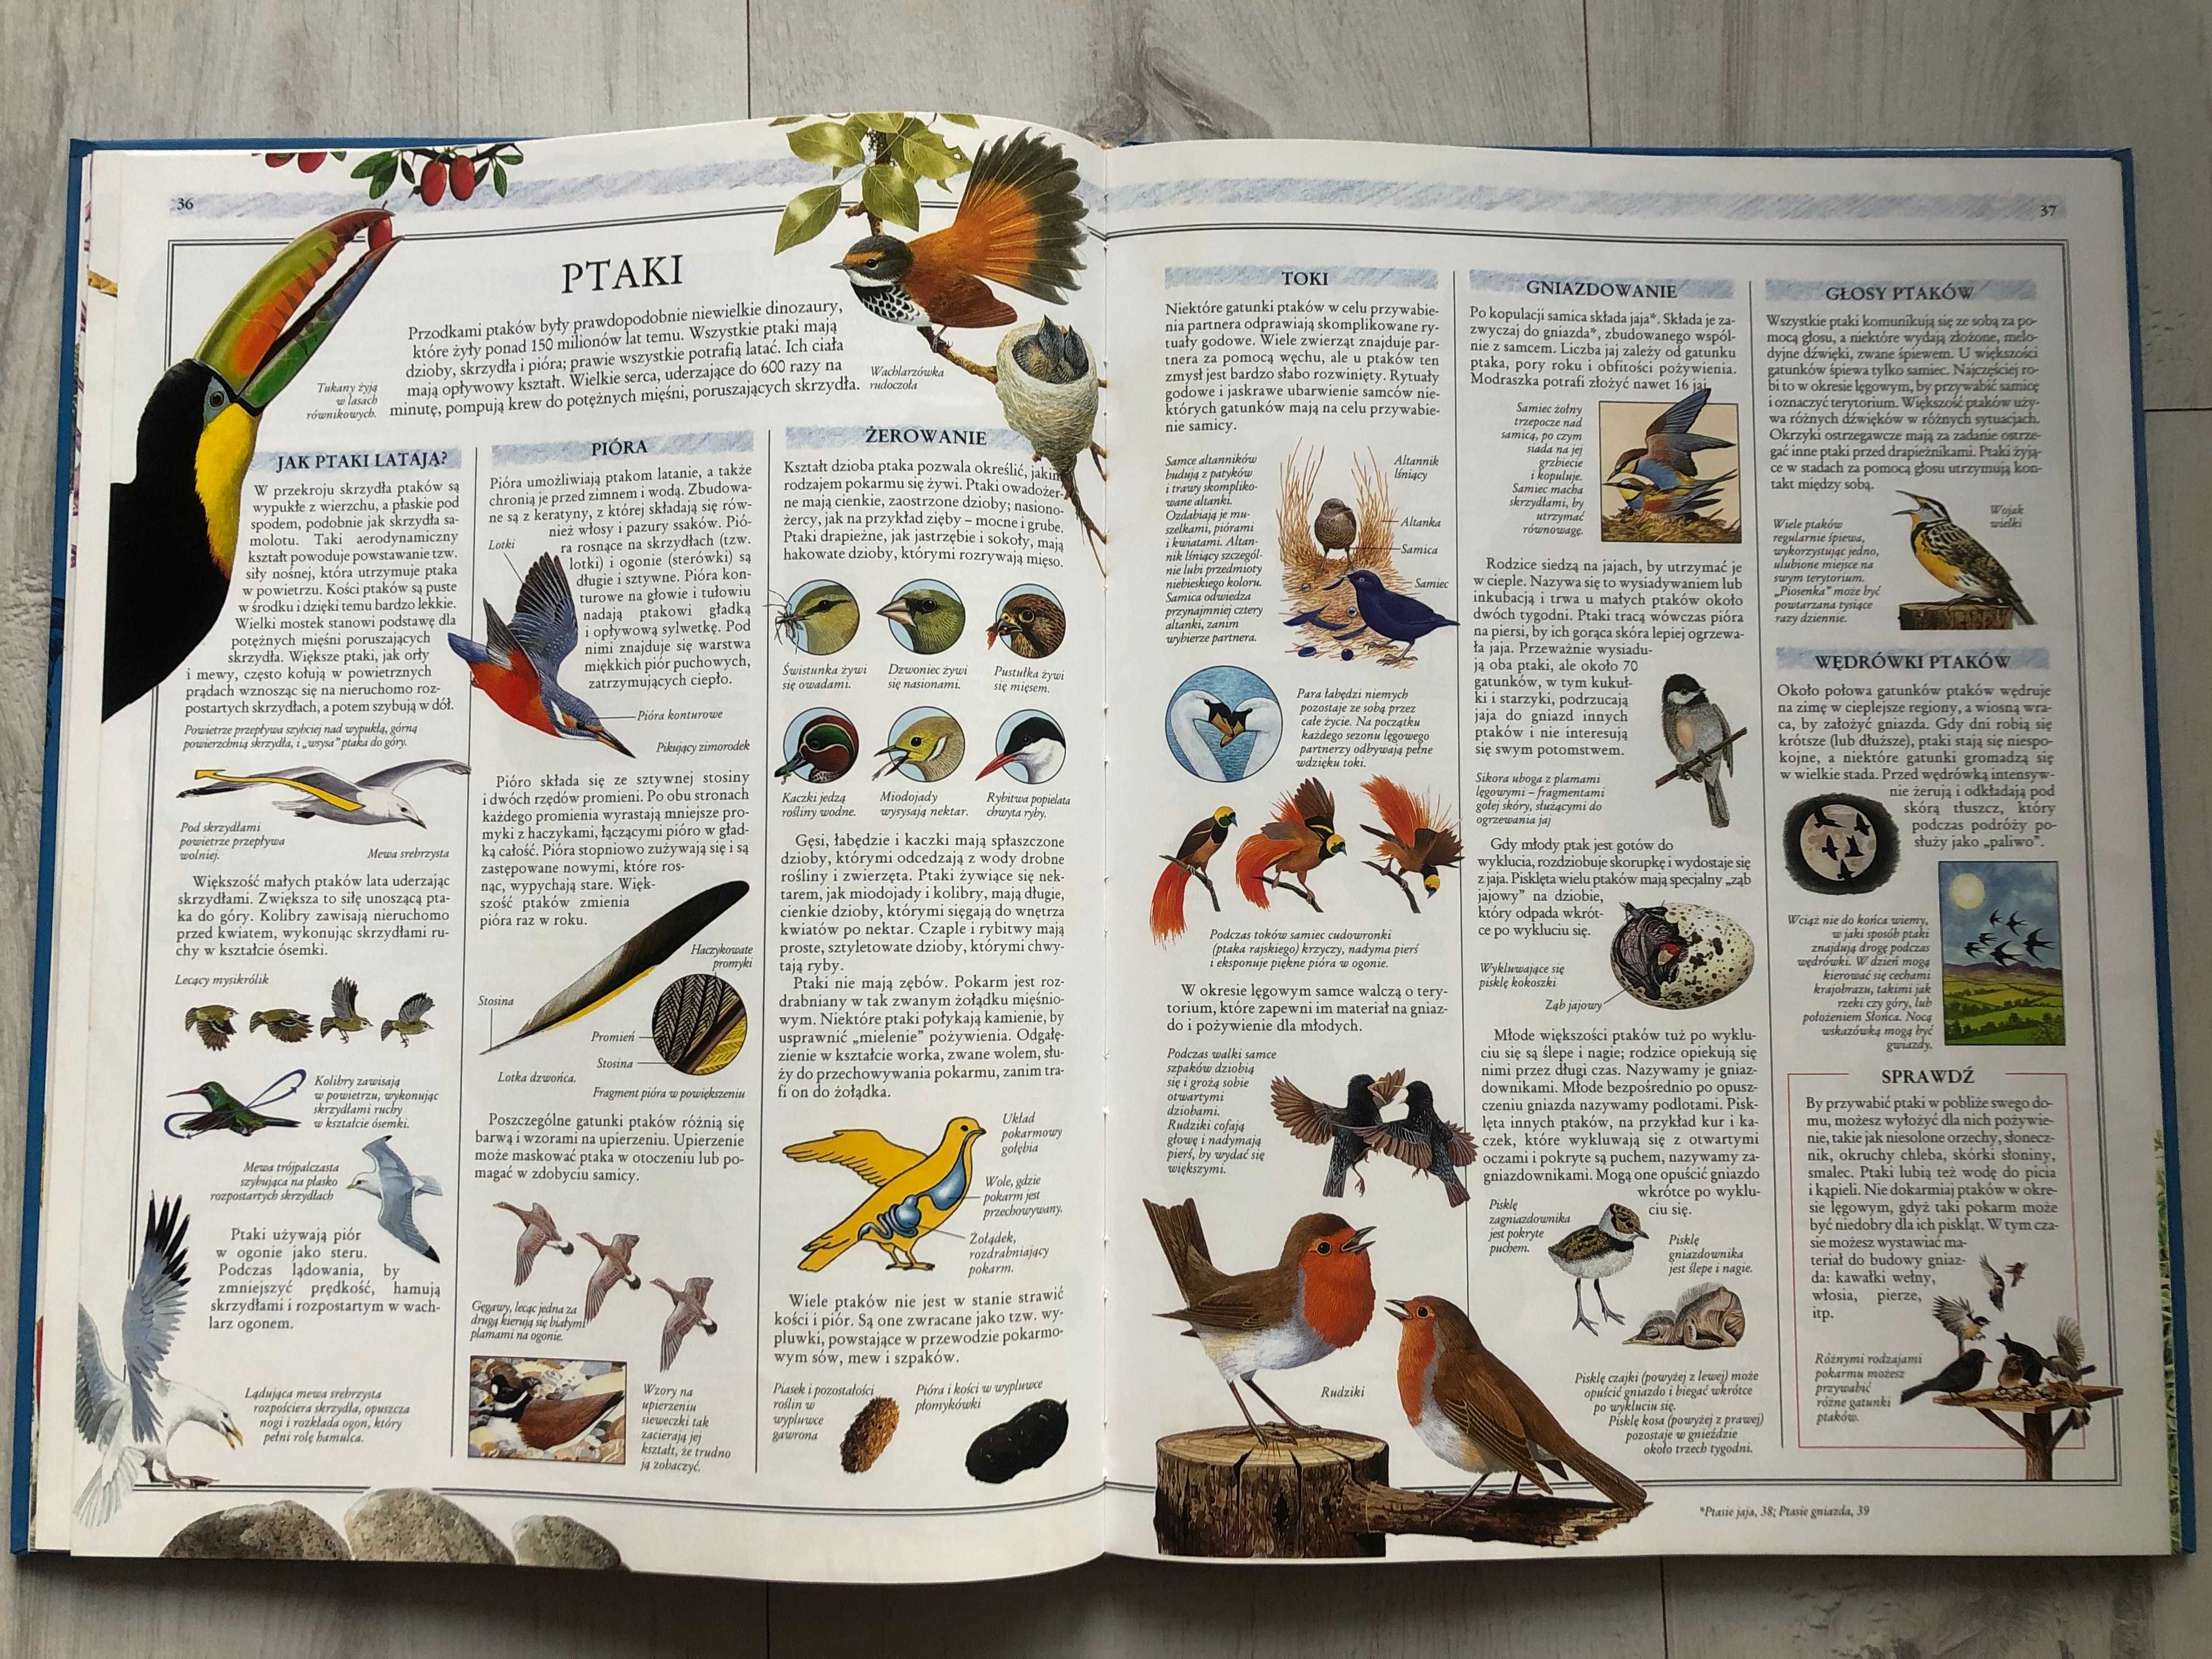 Ilustrowana encyklopedia przyrody Encyklopedie dla dzieci